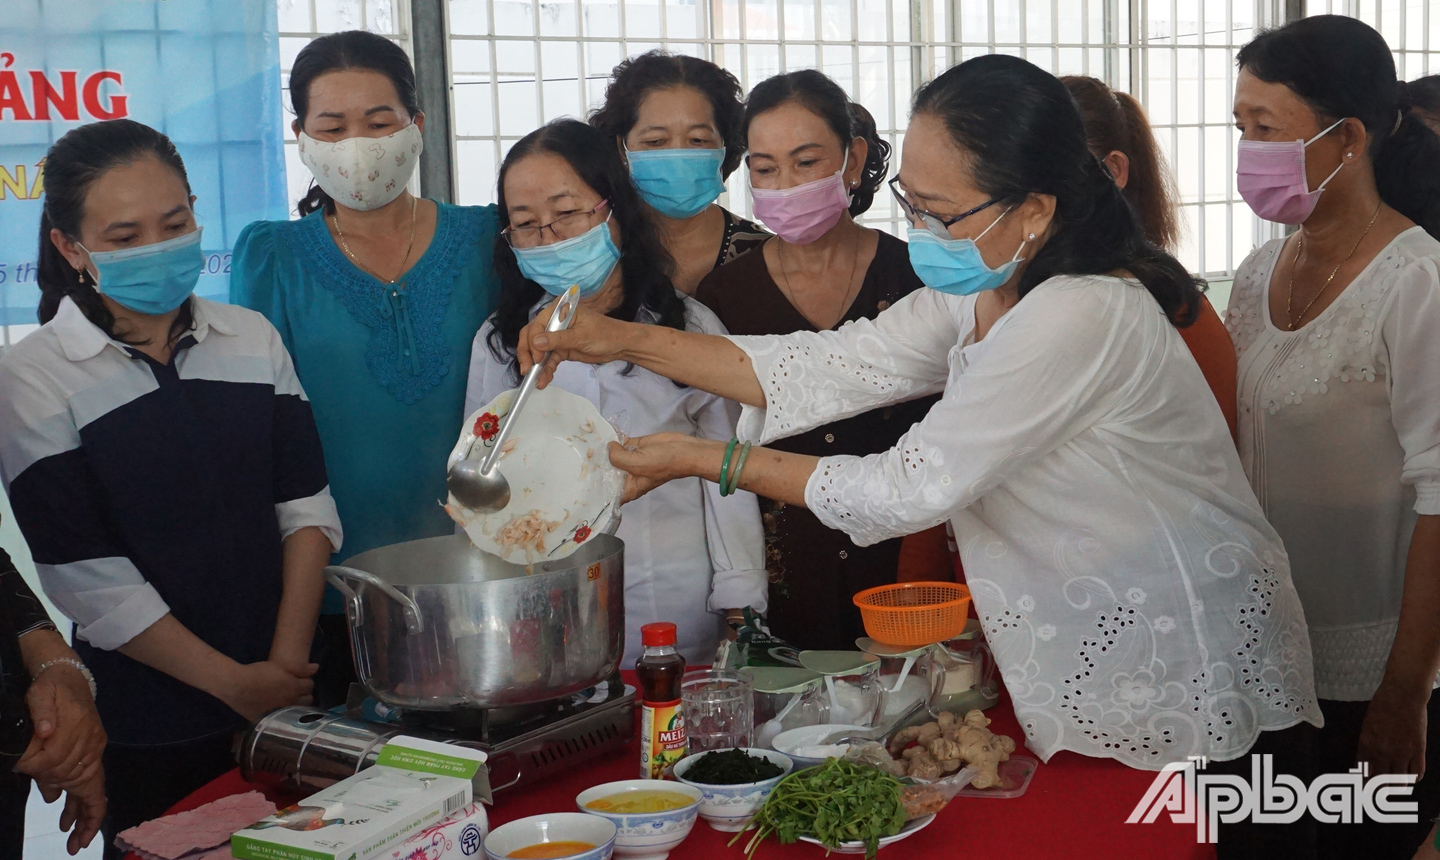 Cô Nguyễn Thị Dũ (giáo viên) chia sẽ kinh nghiệm, truyền đạt bí quyết nấu ăn ngon cho các hội viên, phụ nữ